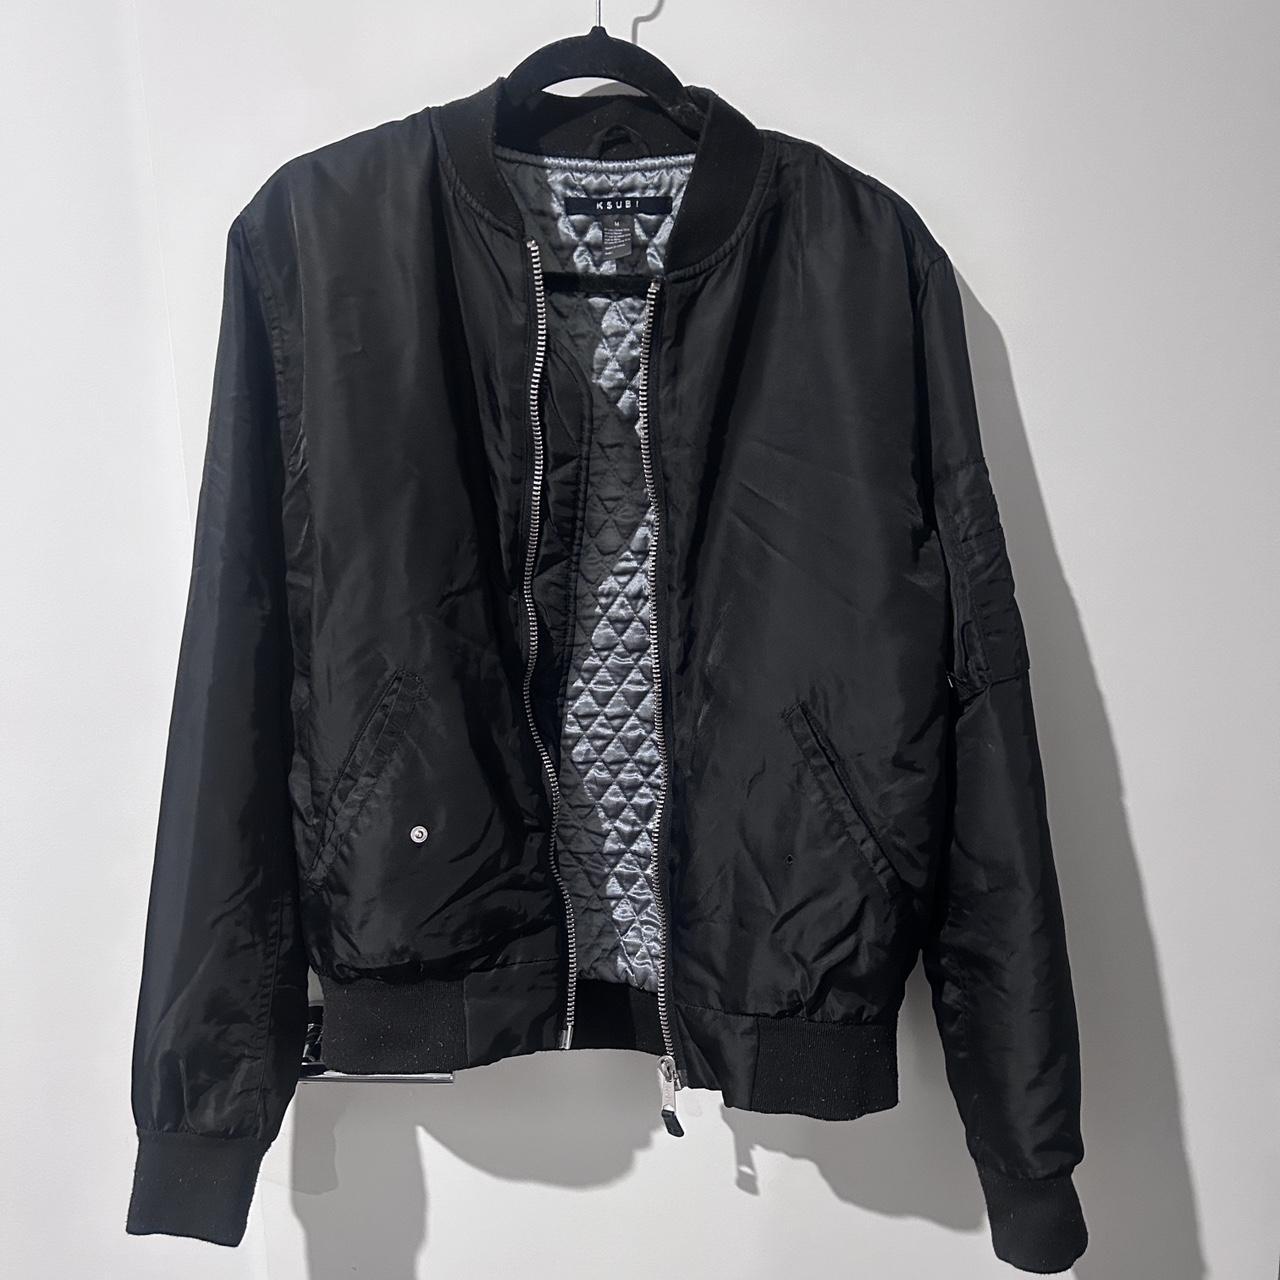 KUSBI Black Jacket Size M - Depop